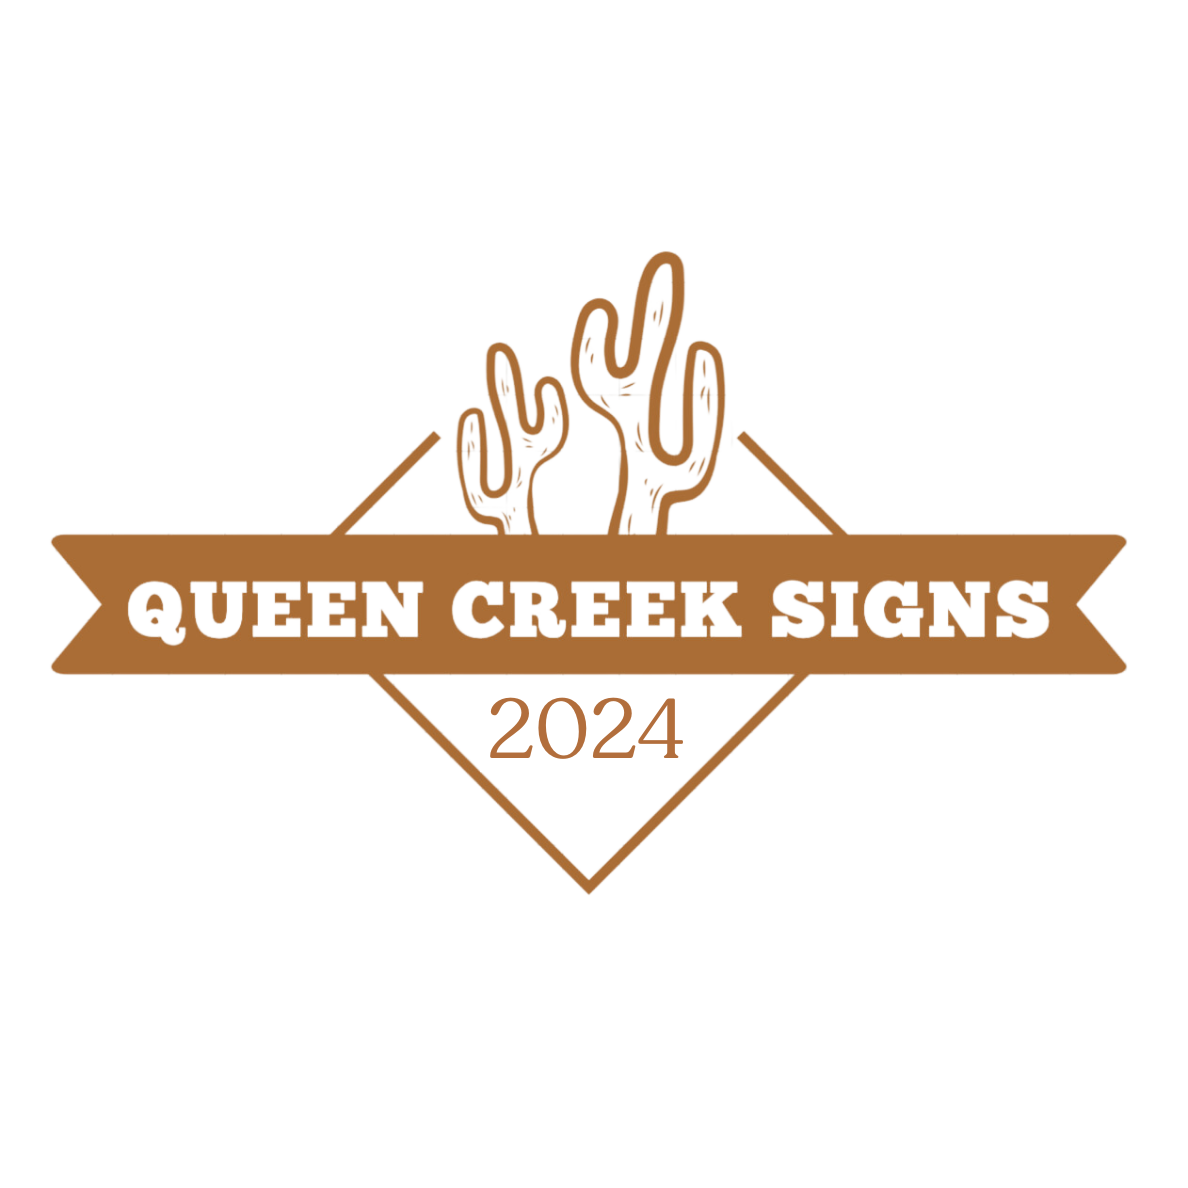 Queen Creek Signs